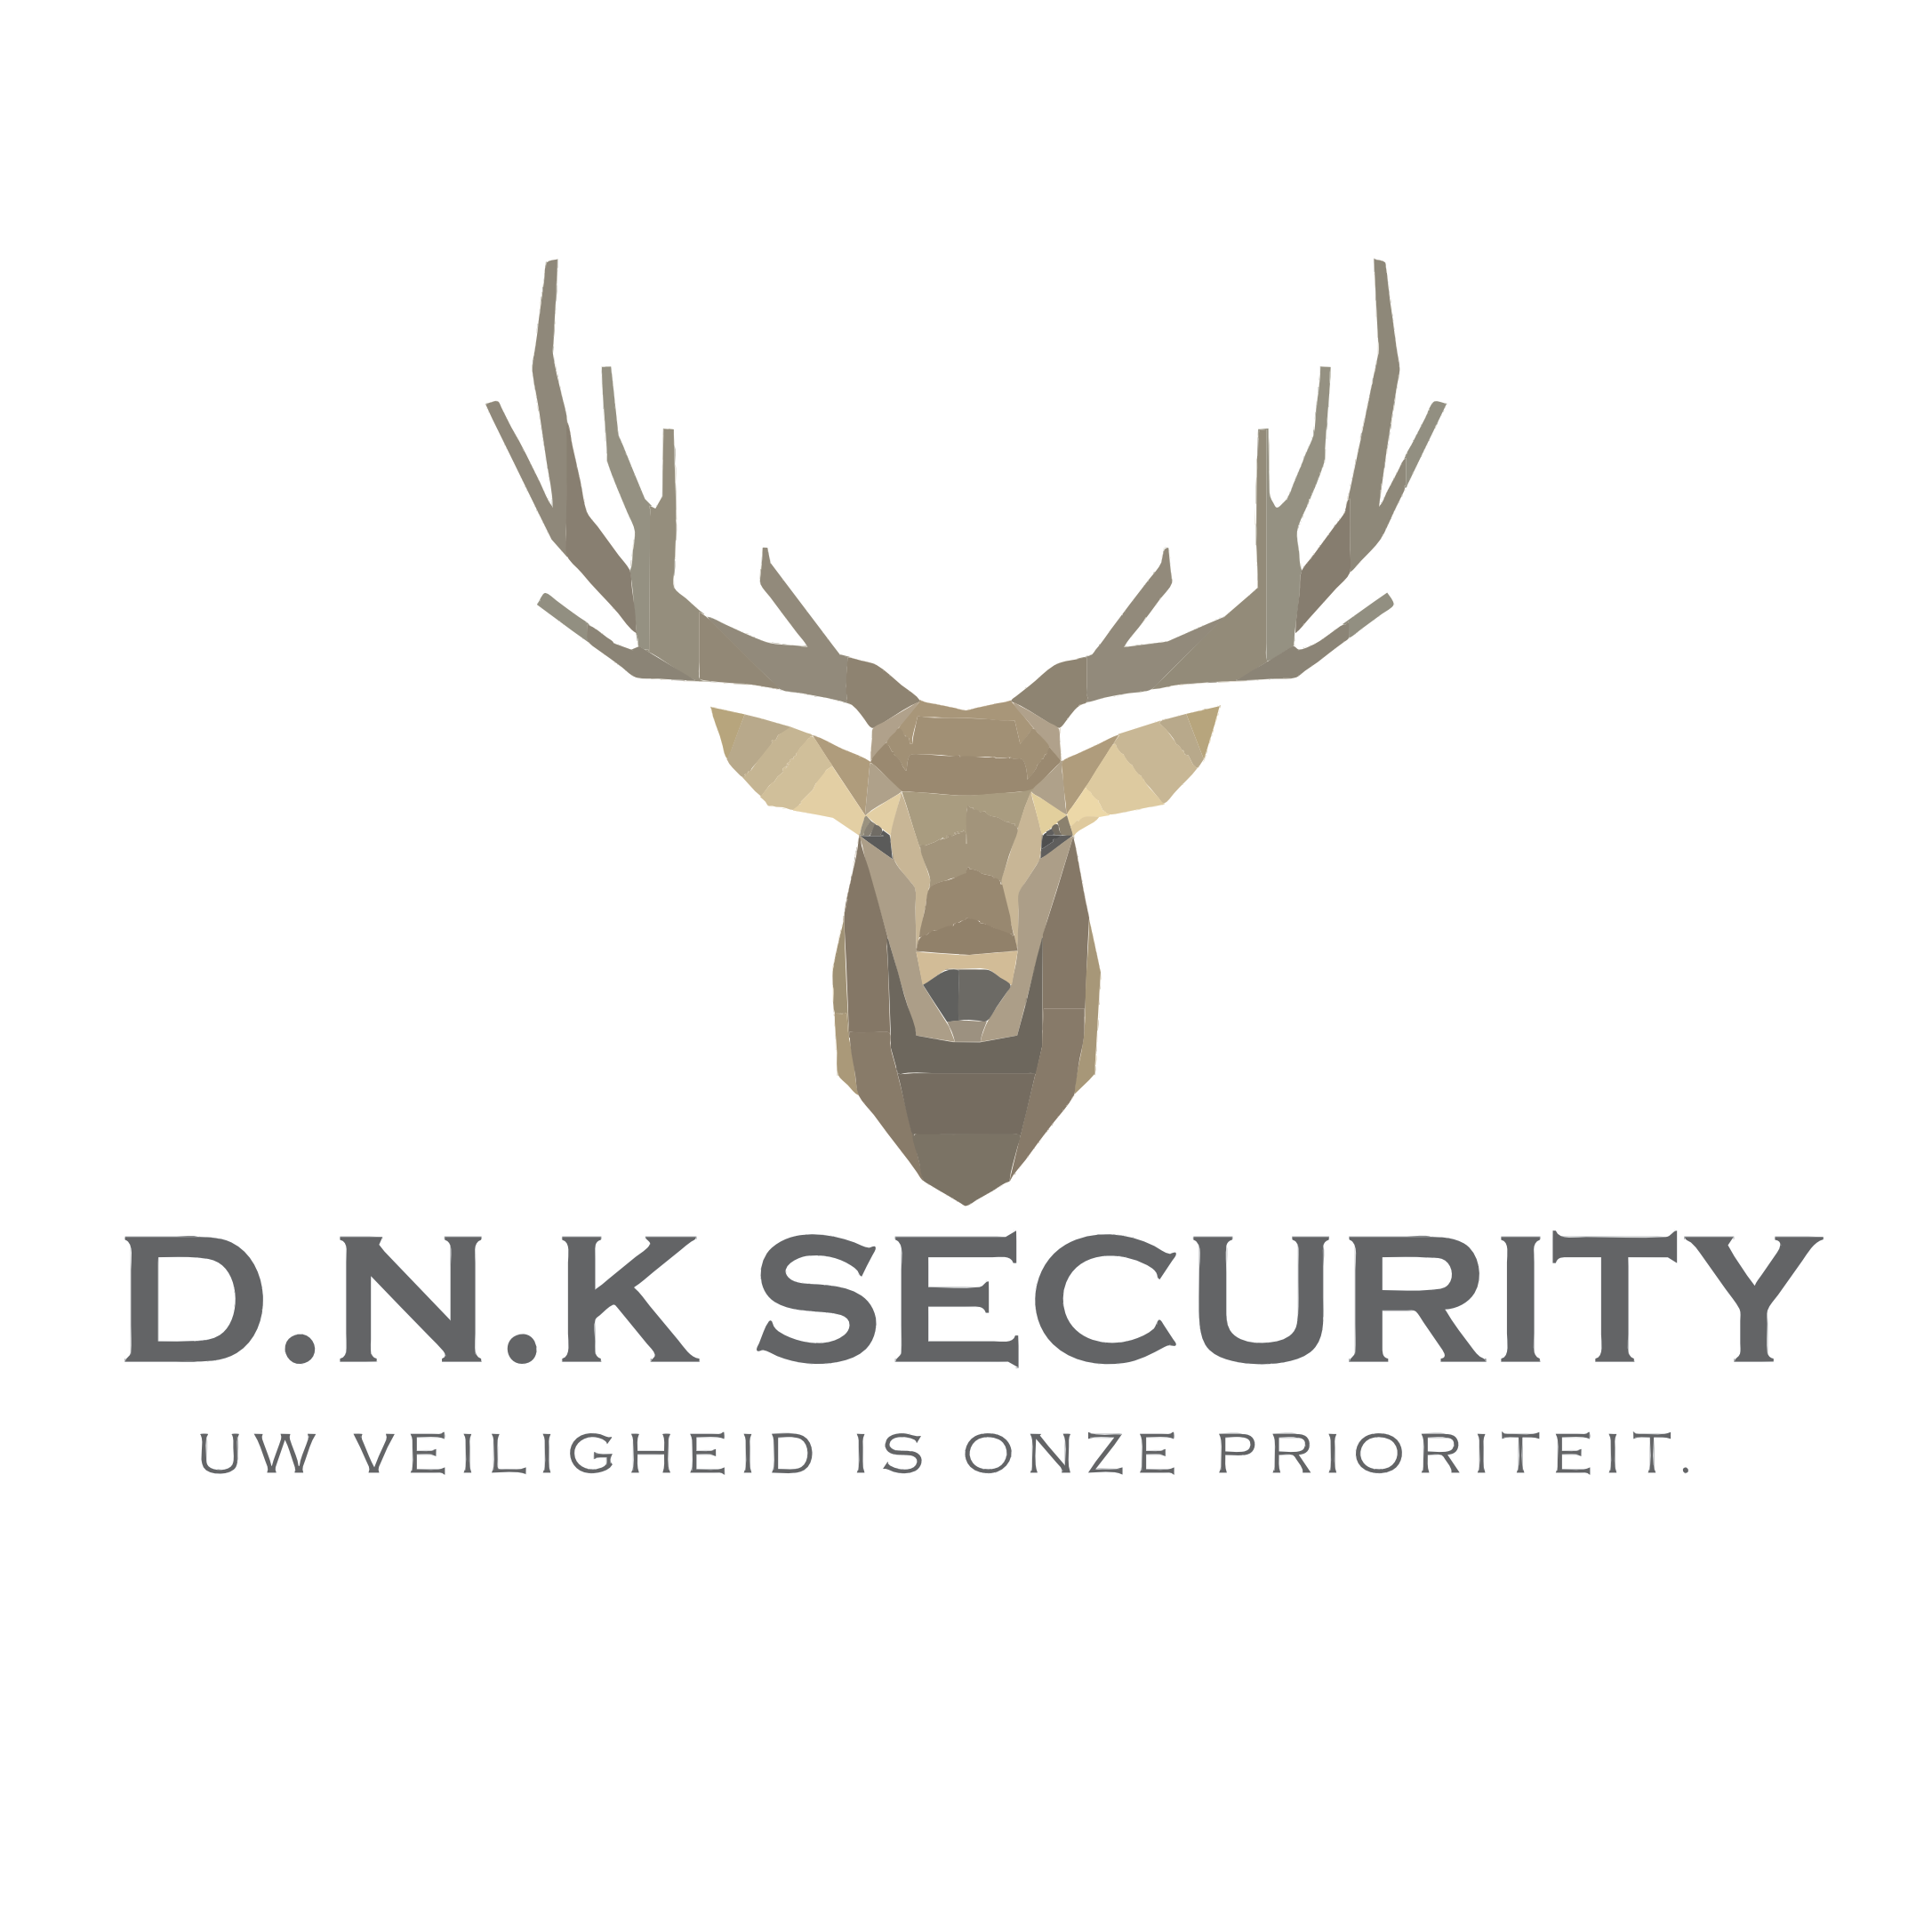 Business Centrum Frisselstein verwelkomt D.N.K. Security